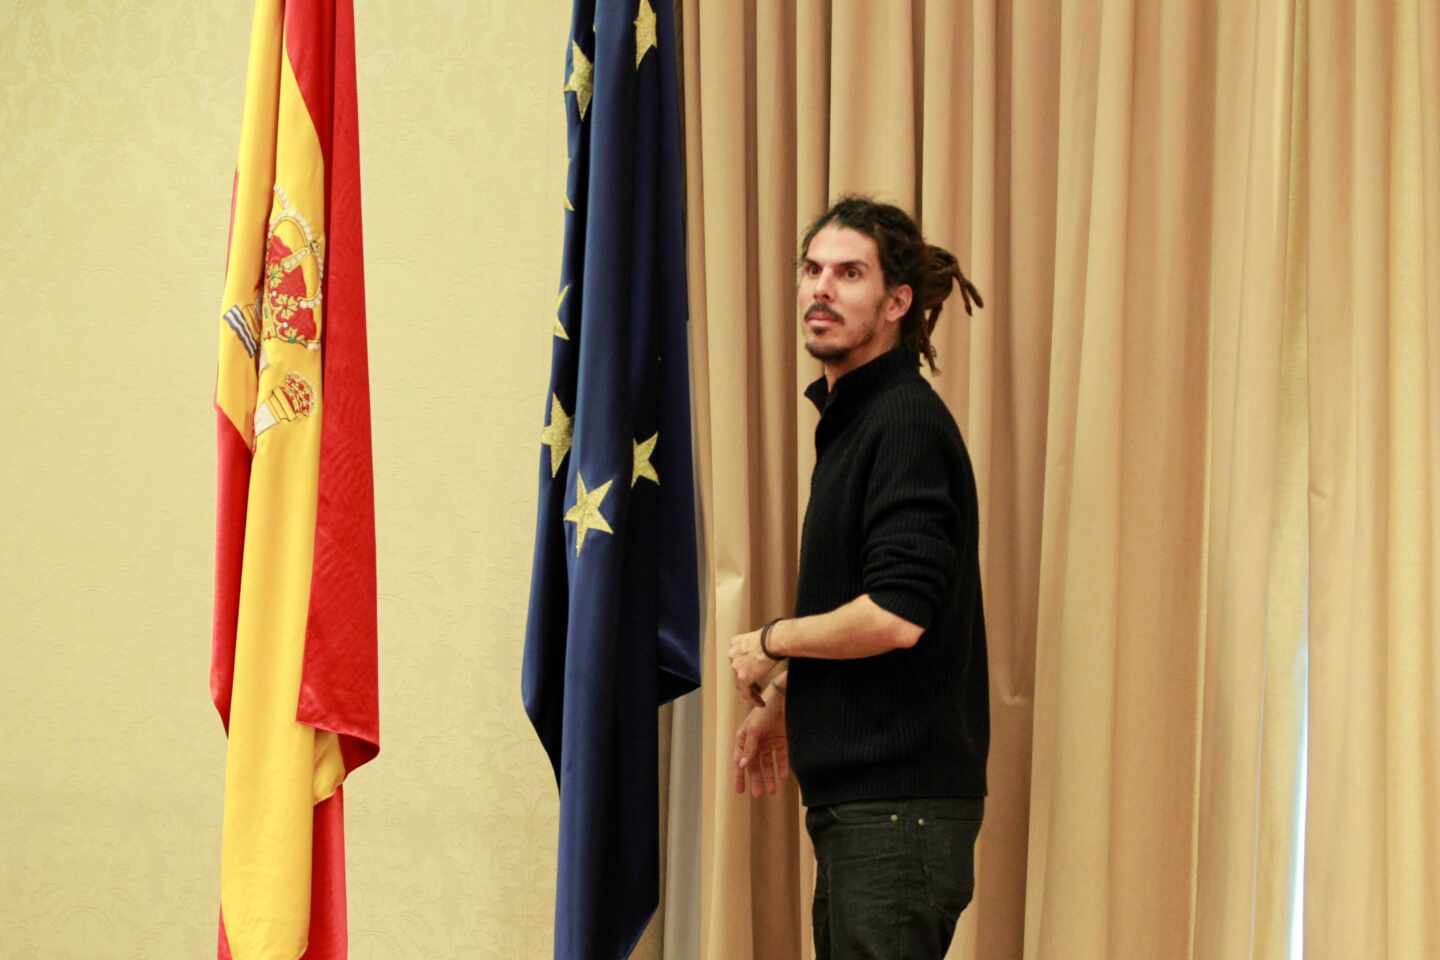 El Supremo investigará al secretario de Organización de Podemos por lesiones y atentado contra agentes de la autoridad